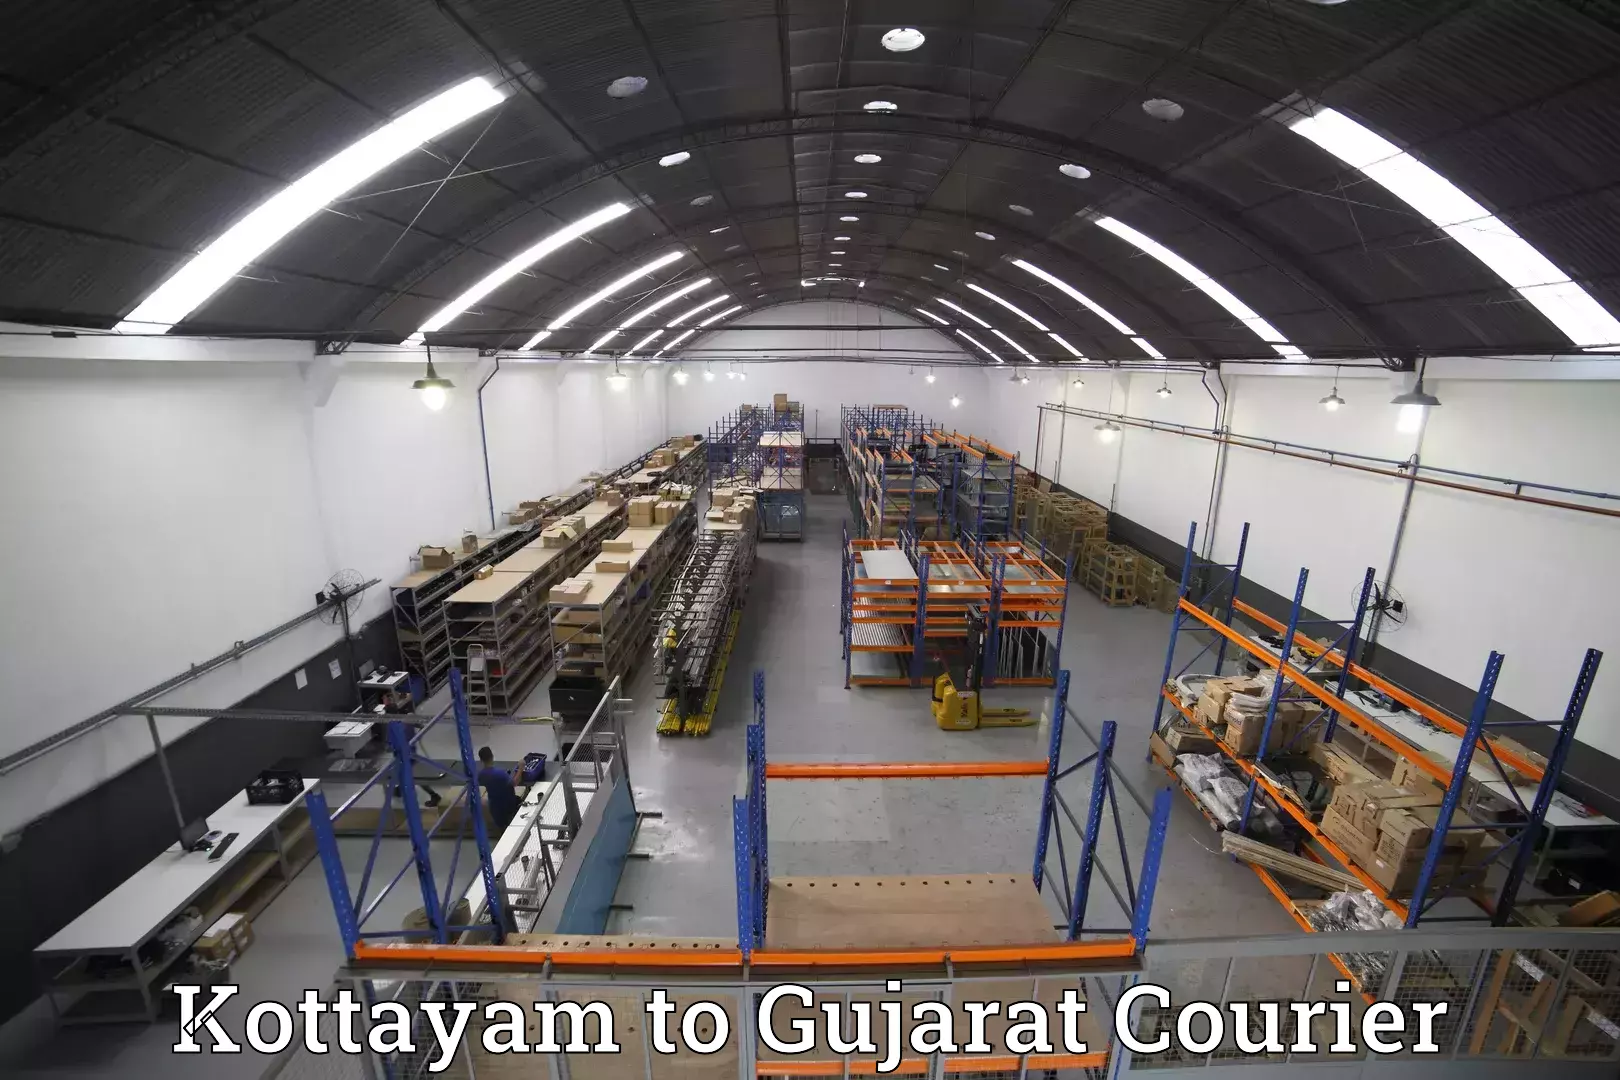 Baggage transport network Kottayam to Kalol Gujarat